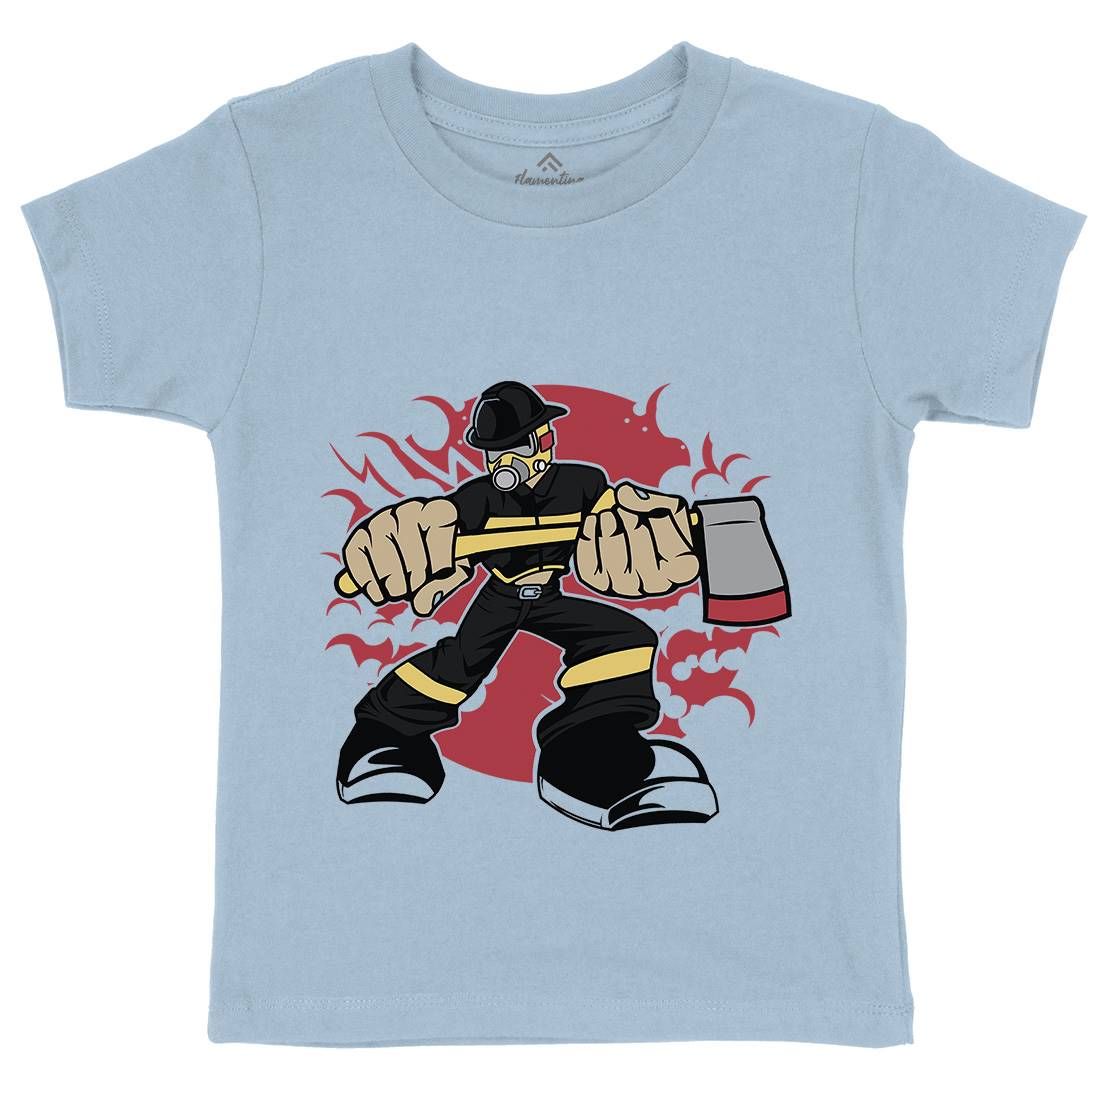 Fireman Kids Crew Neck T-Shirt Firefighters C359